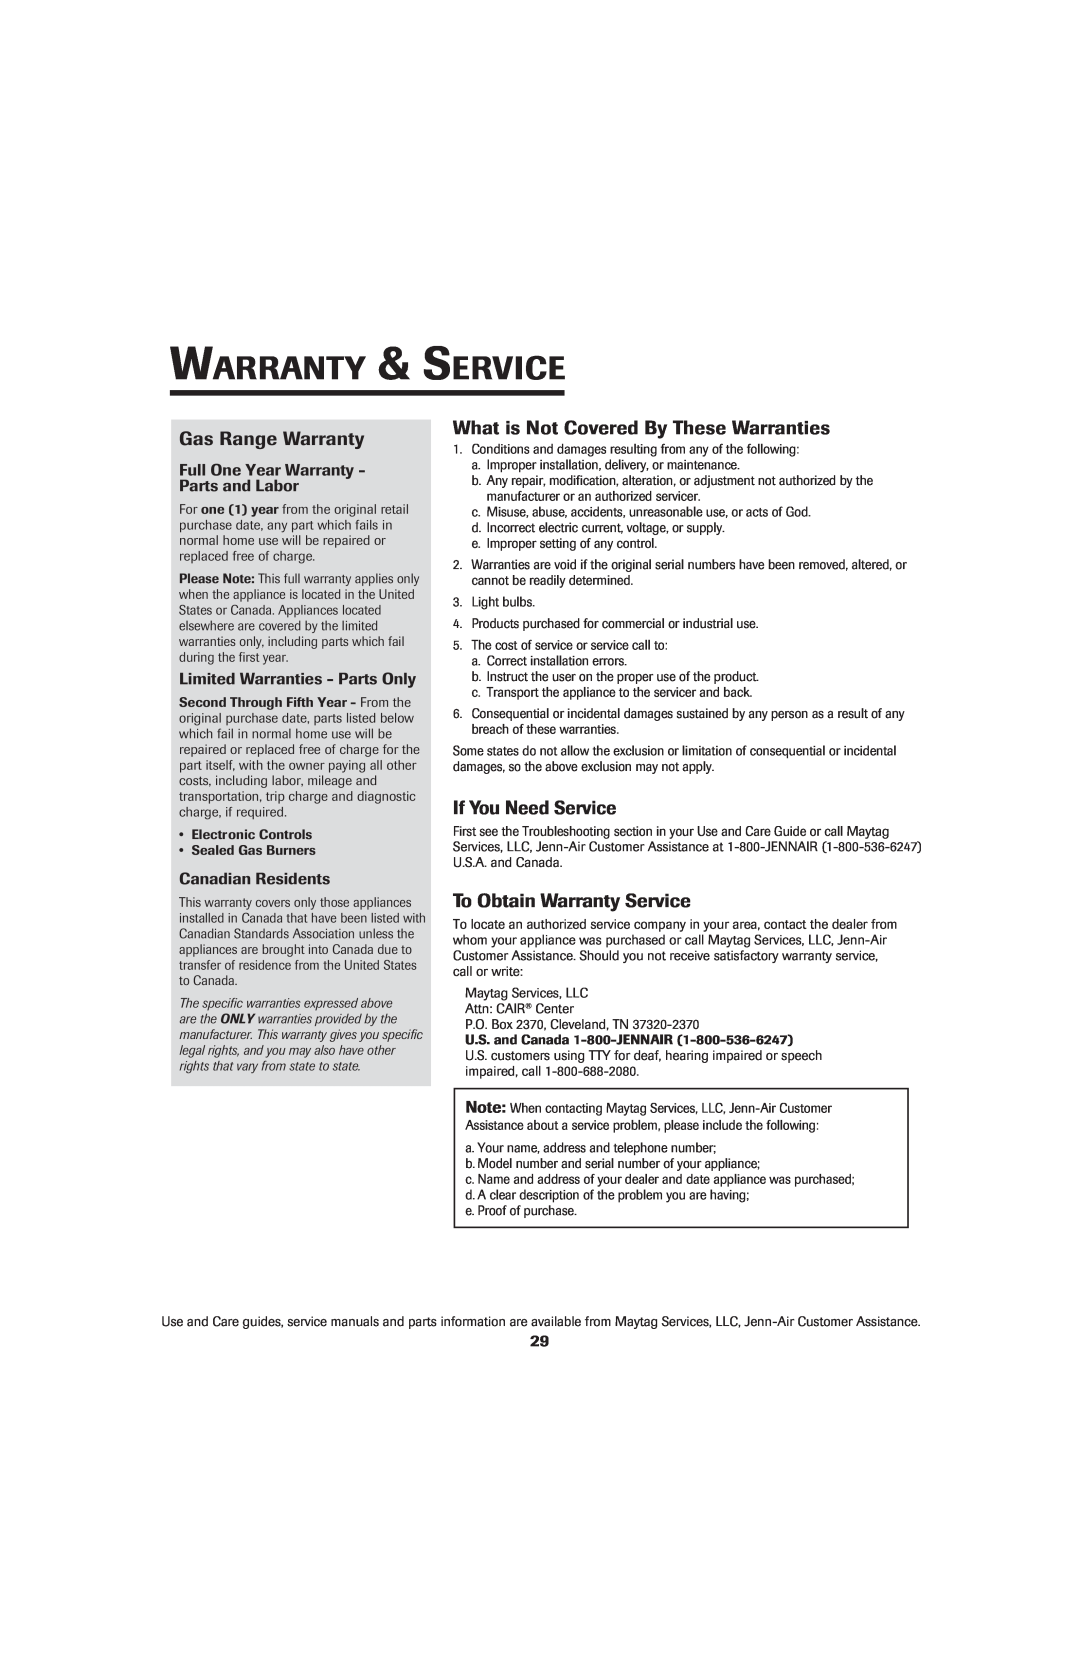 Jenn-Air SLIDE-IN RANGE Warranty & Service, Gas Range Warranty, What is Not Covered By These Warranties 